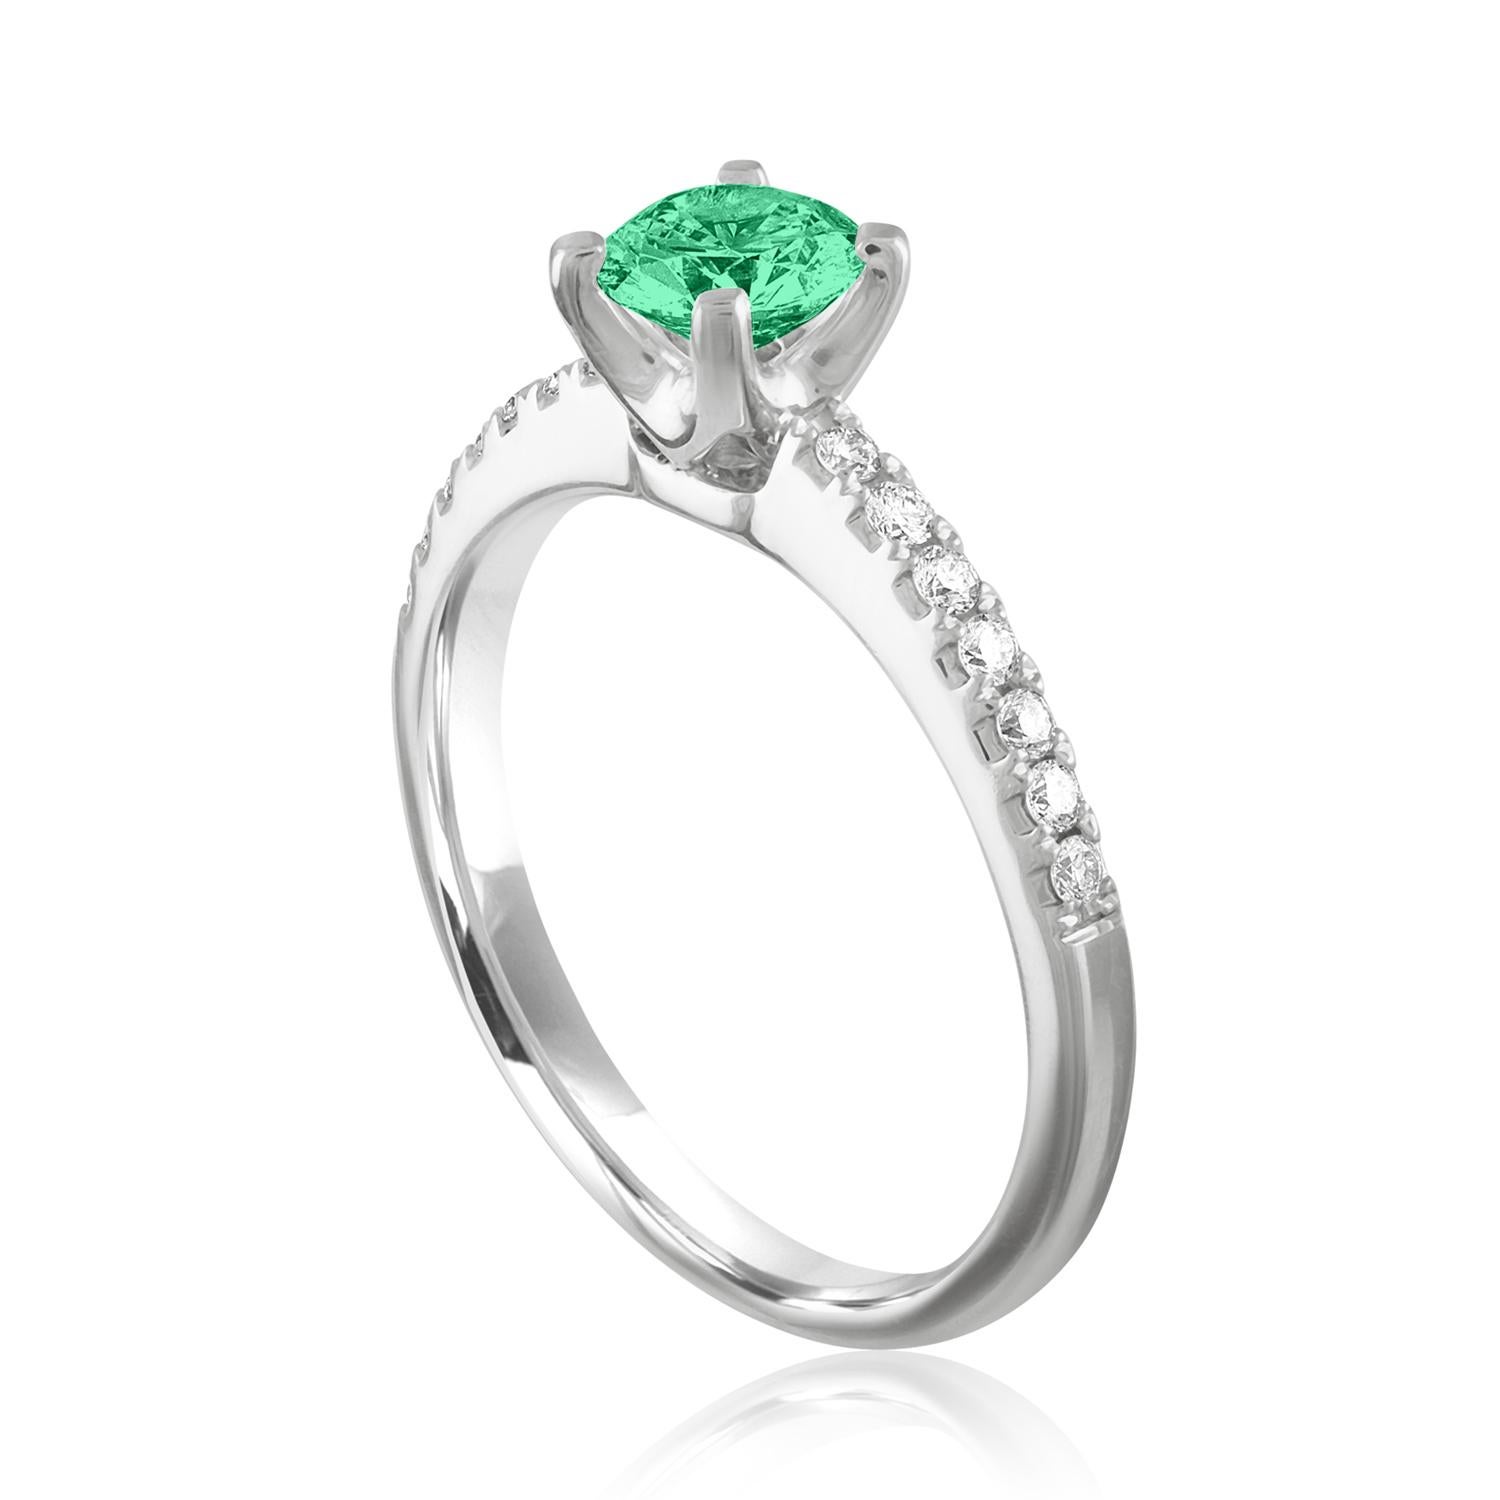 Schöner Diamant & Smaragd Ring
Der Ring ist aus 18 Karat Weißgold.
Es sind 0.19 Karat in Diamanten F/G VS/SI
Das Zentrum ist rund 0.46 Karat Smaragd.
Der Smaragd ist AGL-zertifiziert.
Der Ring ist eine Größe 6.25, sizable.
Der Ring wiegt 3.2 Gramm.